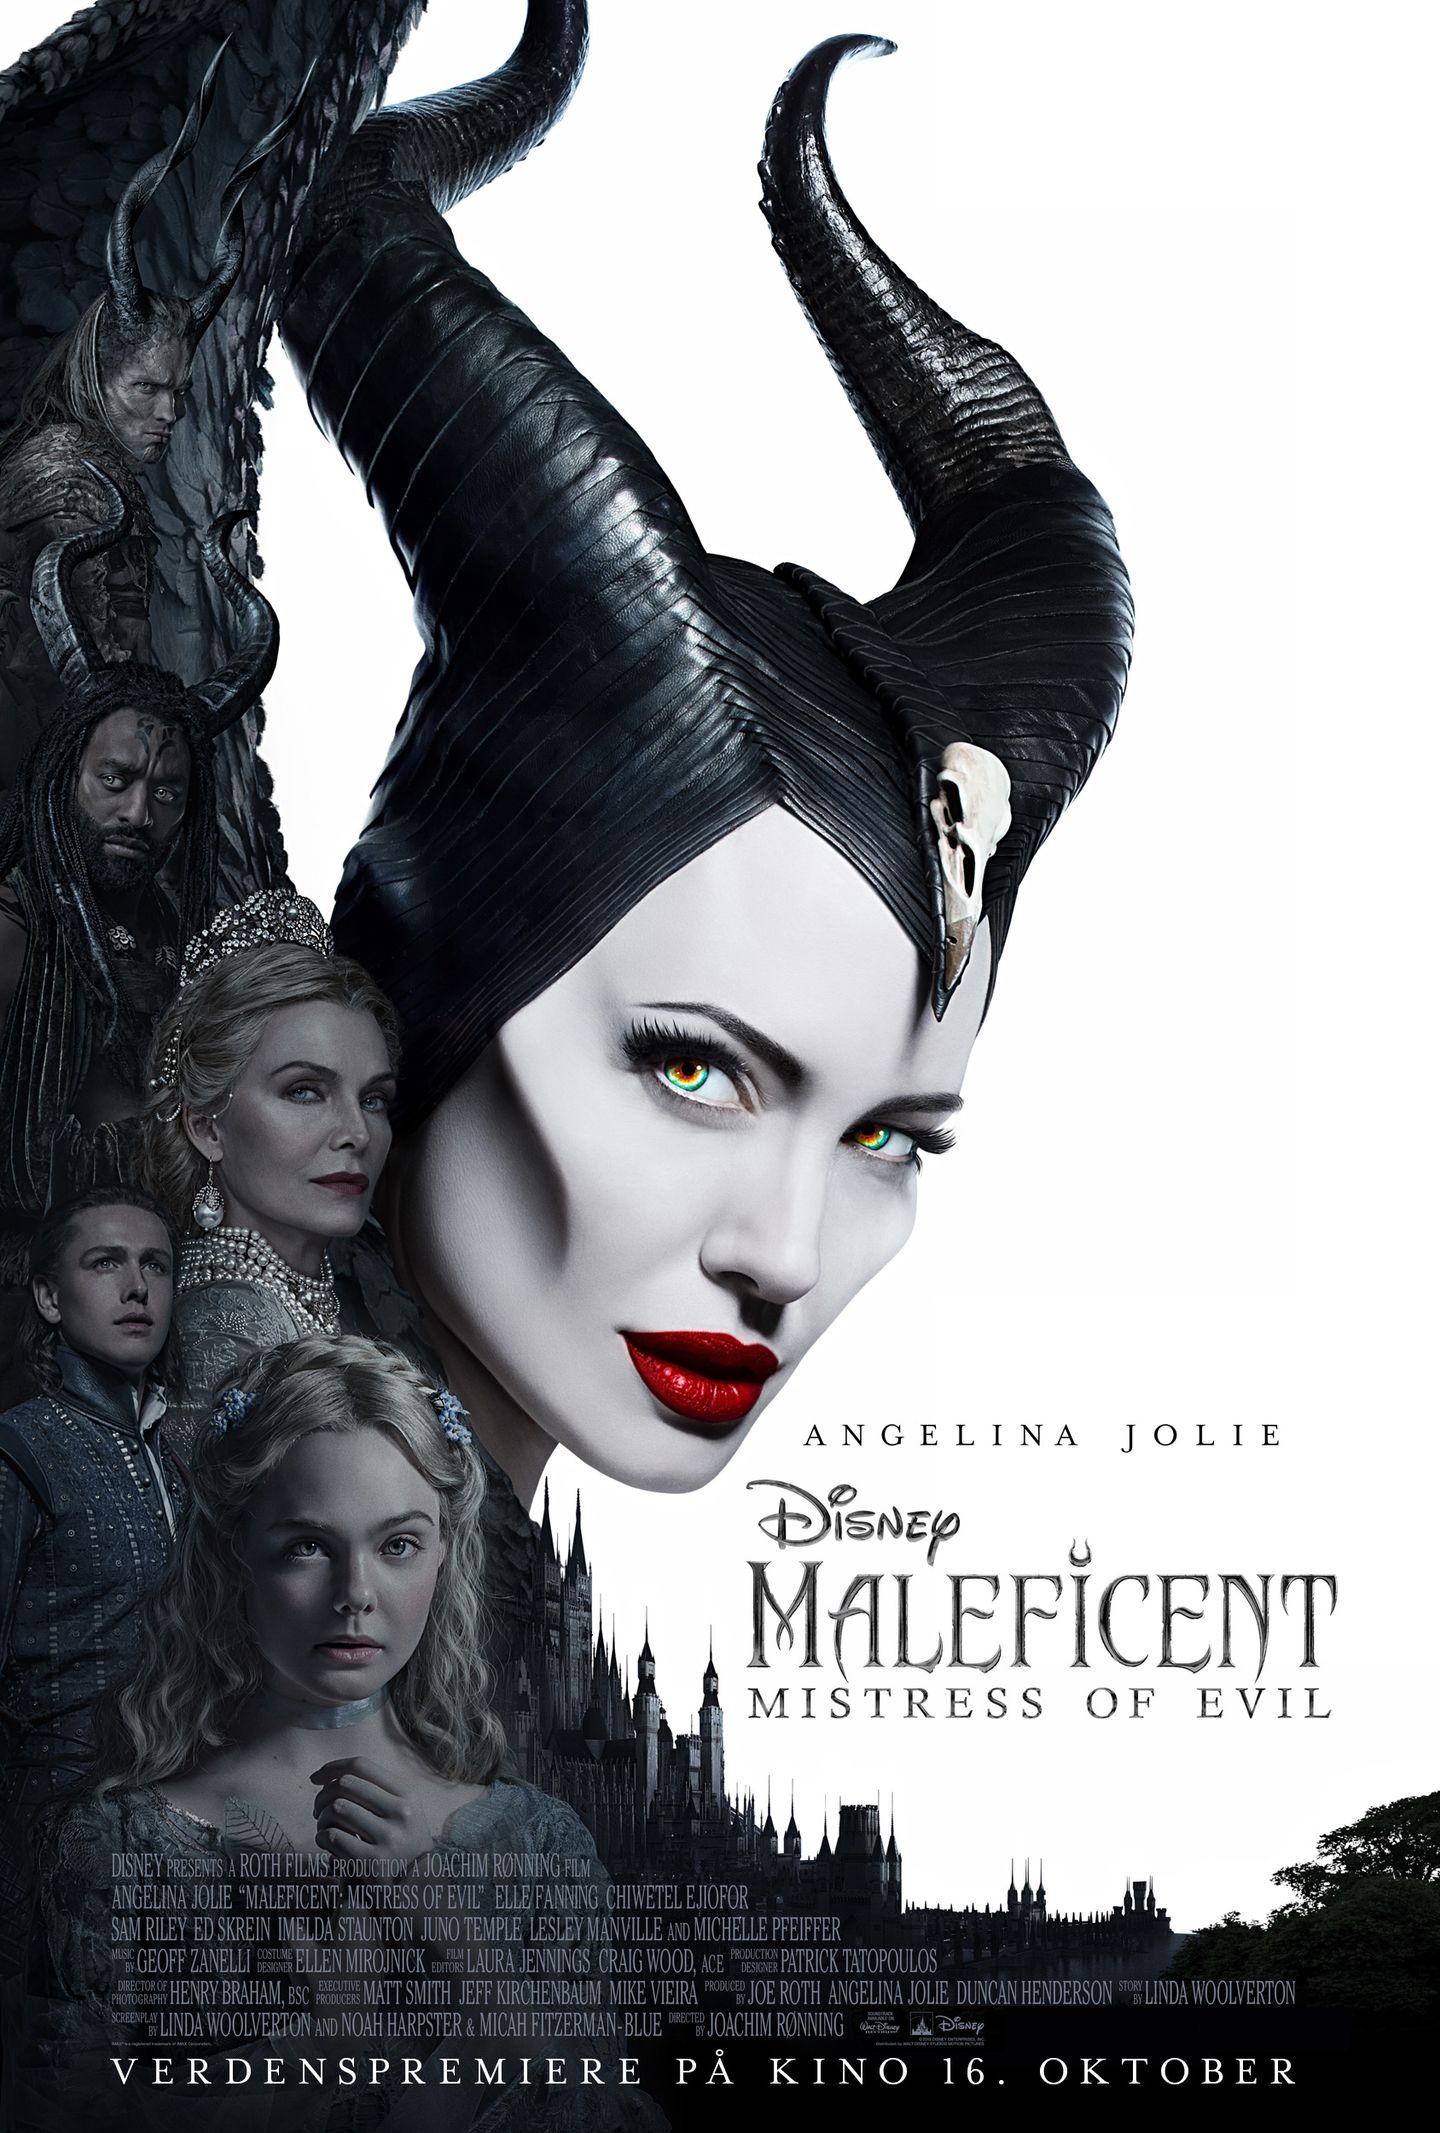 Plakat for 'Maleficent: Mistress of Evil'